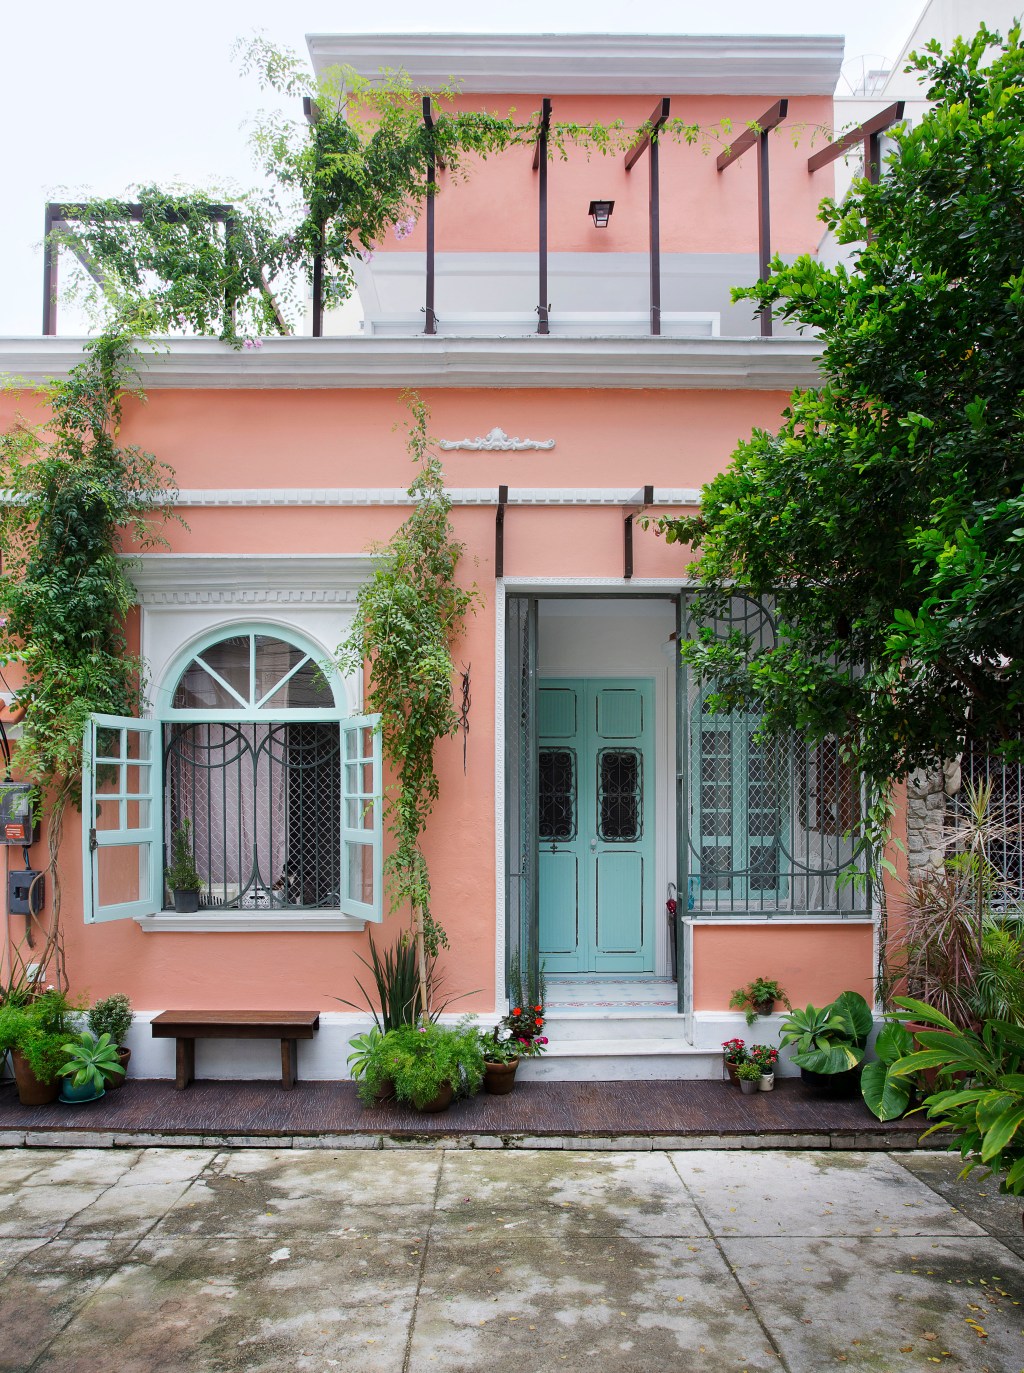 Casa de vila de 151m² tem fachada em candy colors e estilo shabby chic |  CASA.COM.BR